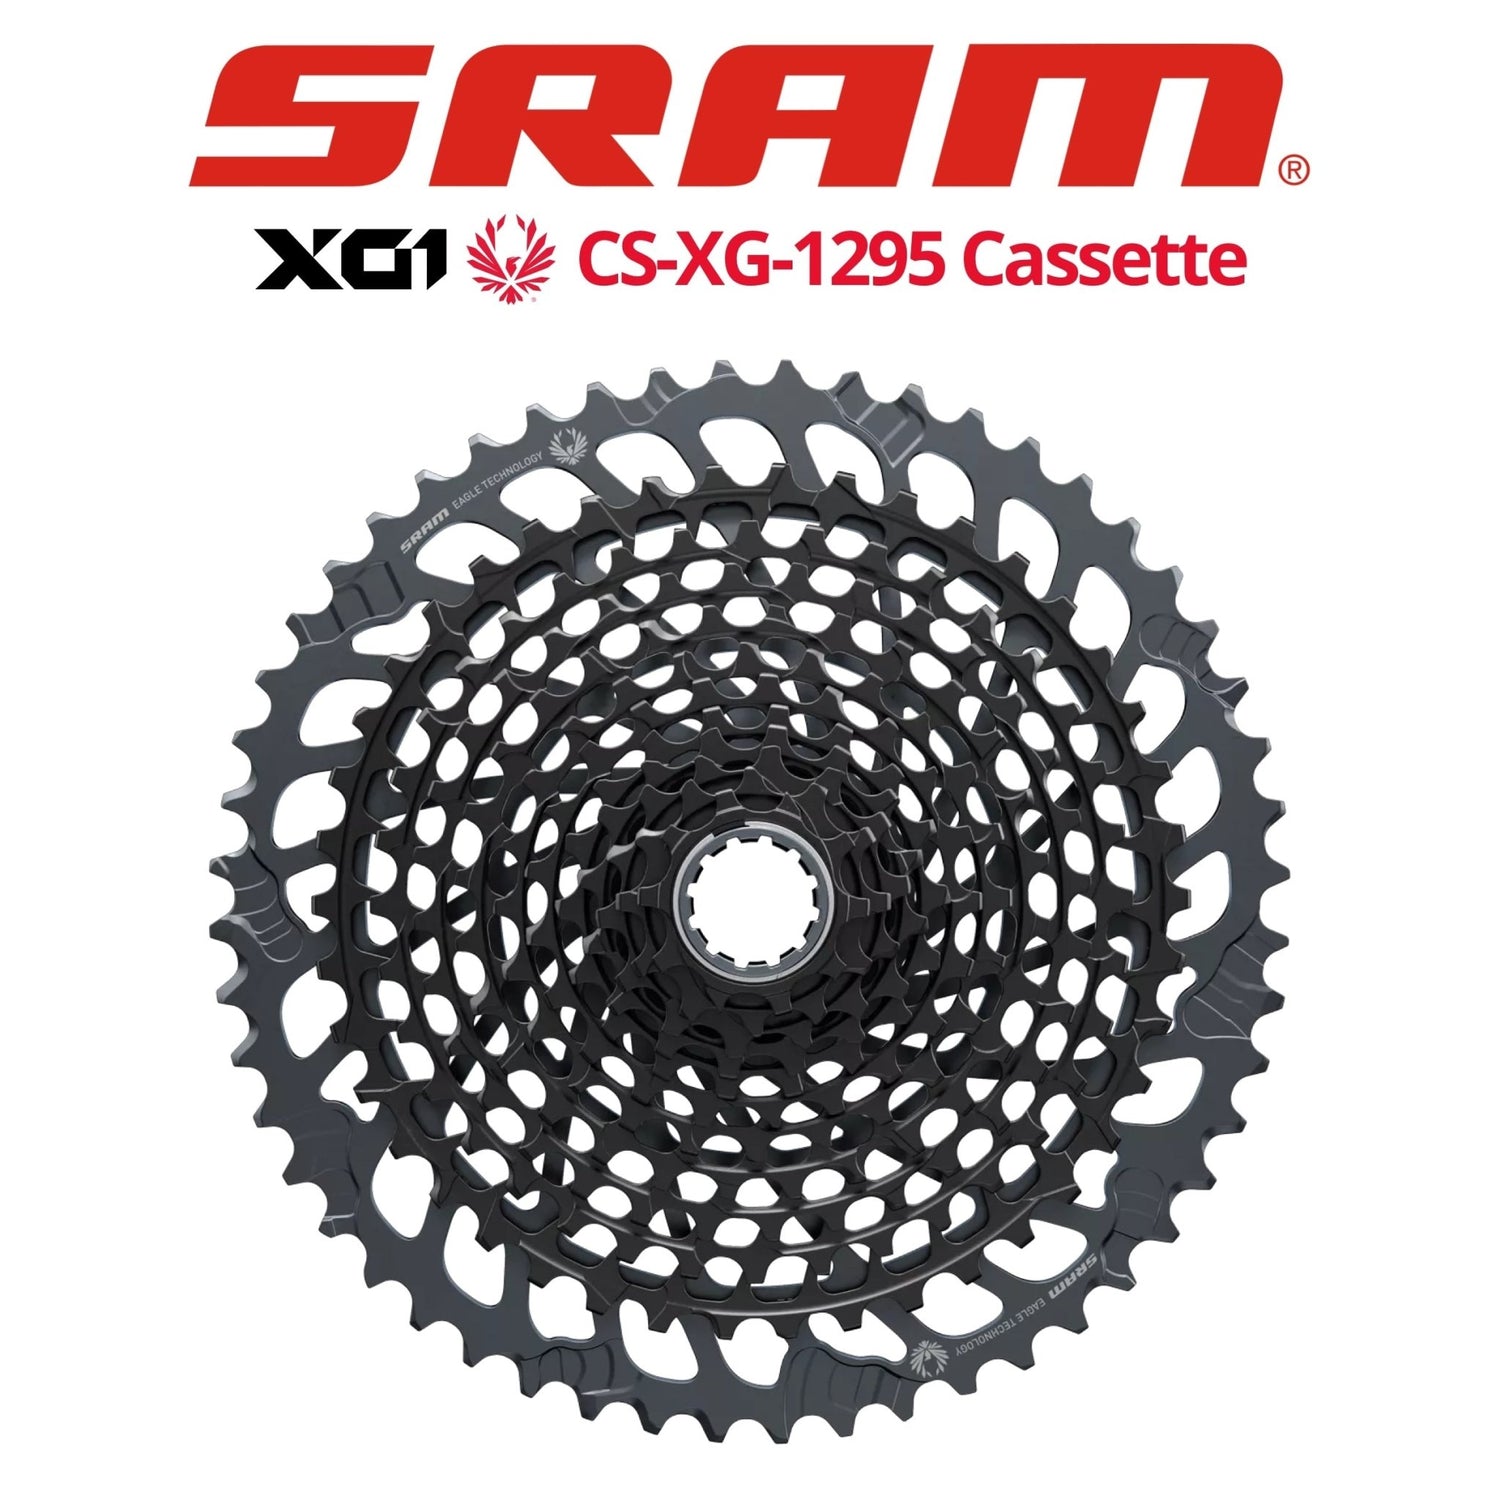 人気アイテム SRAM スラム EAGLE X01 XG-1295 カセットスプロケット ...